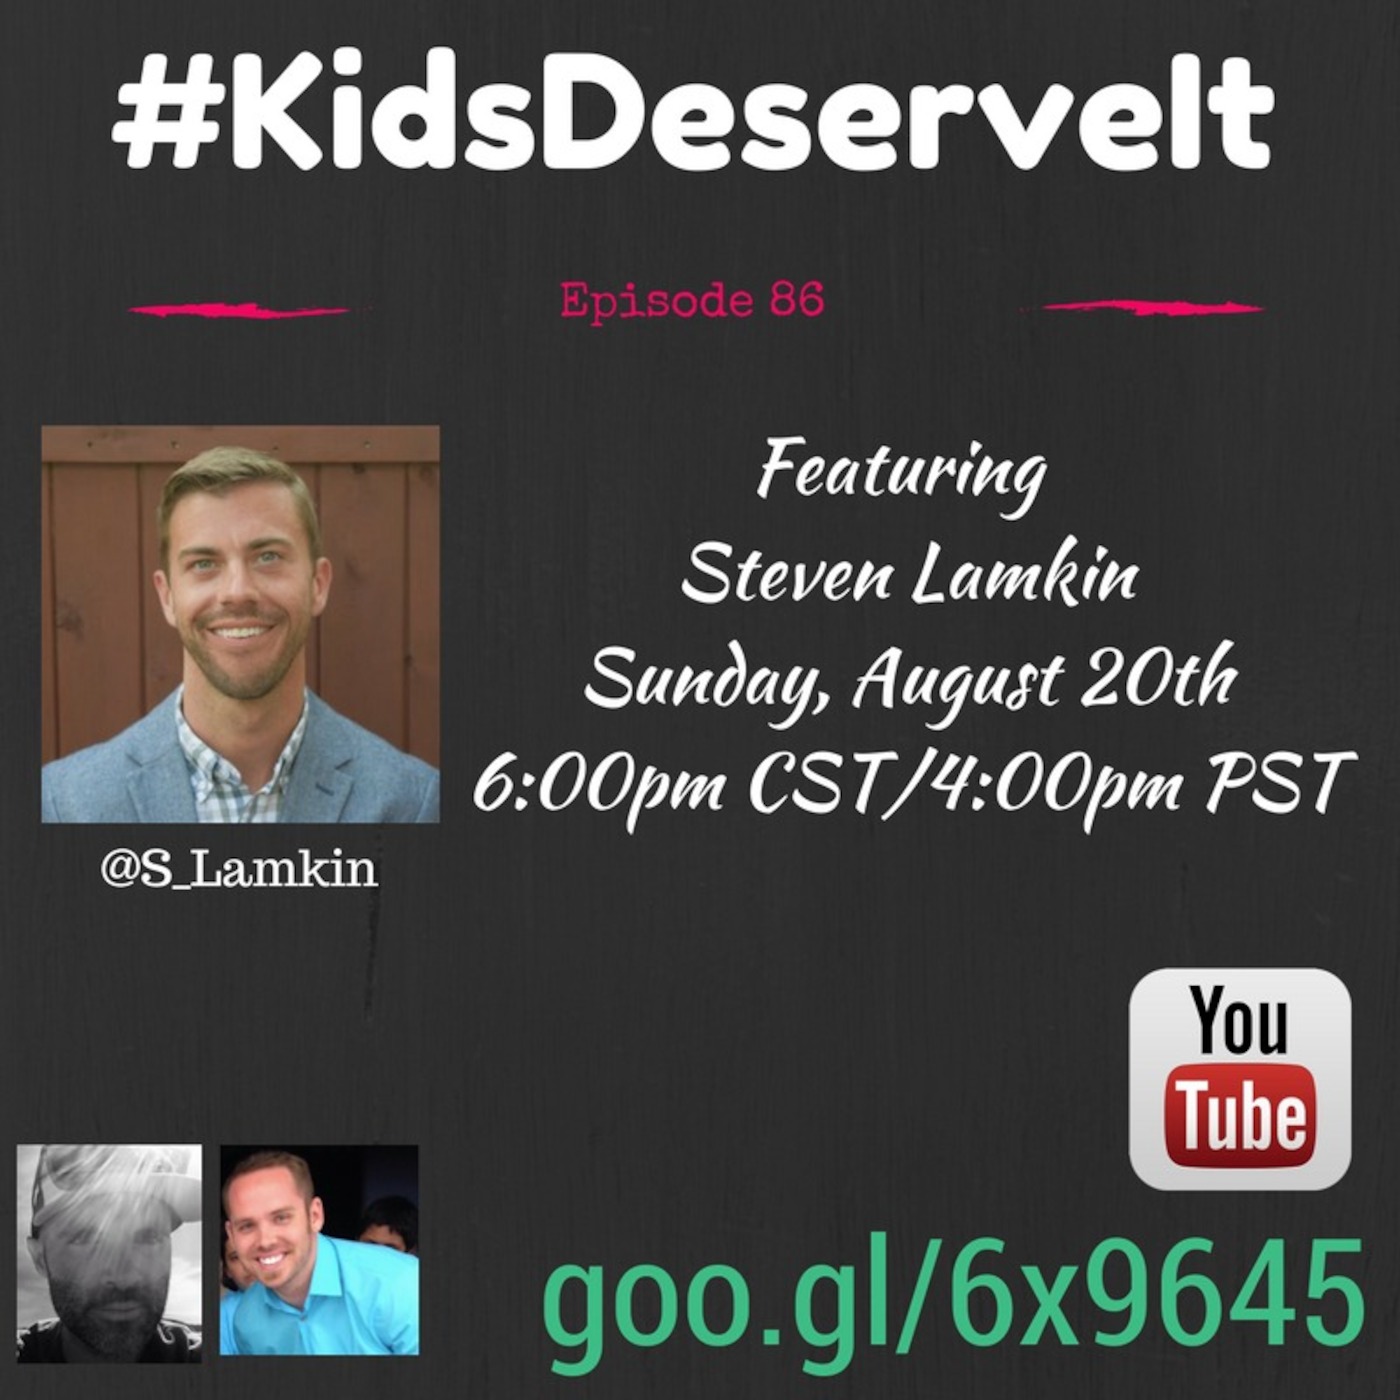 Episode 86 of #KidsDeserveIt with Steven Lamkin